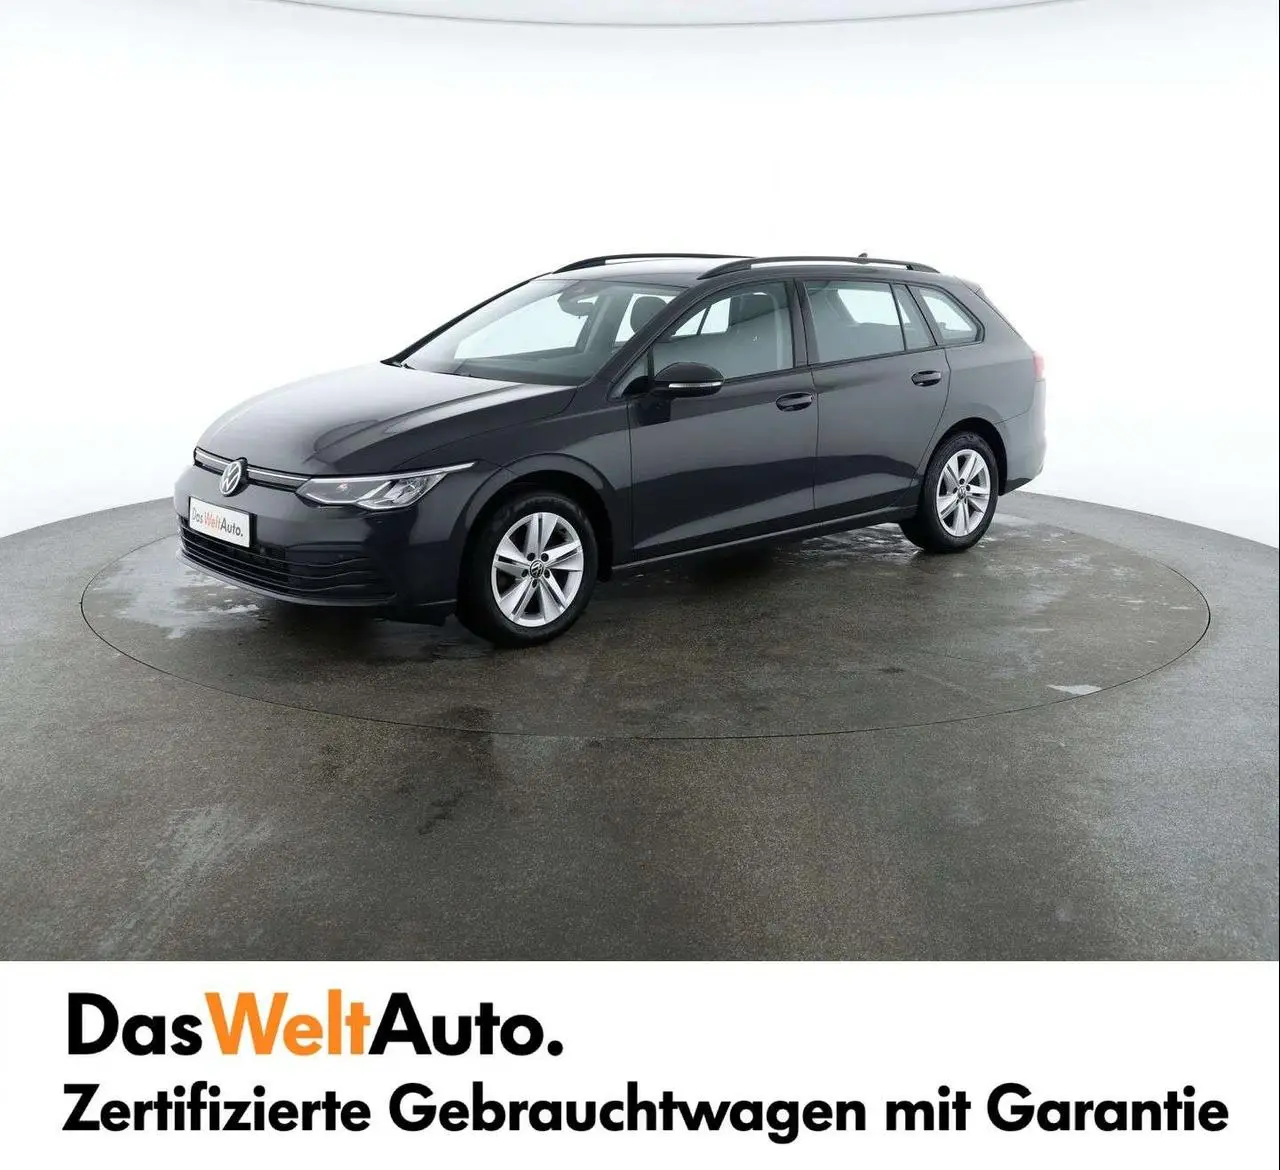 Photo 1 : Volkswagen Golf 2021 Diesel